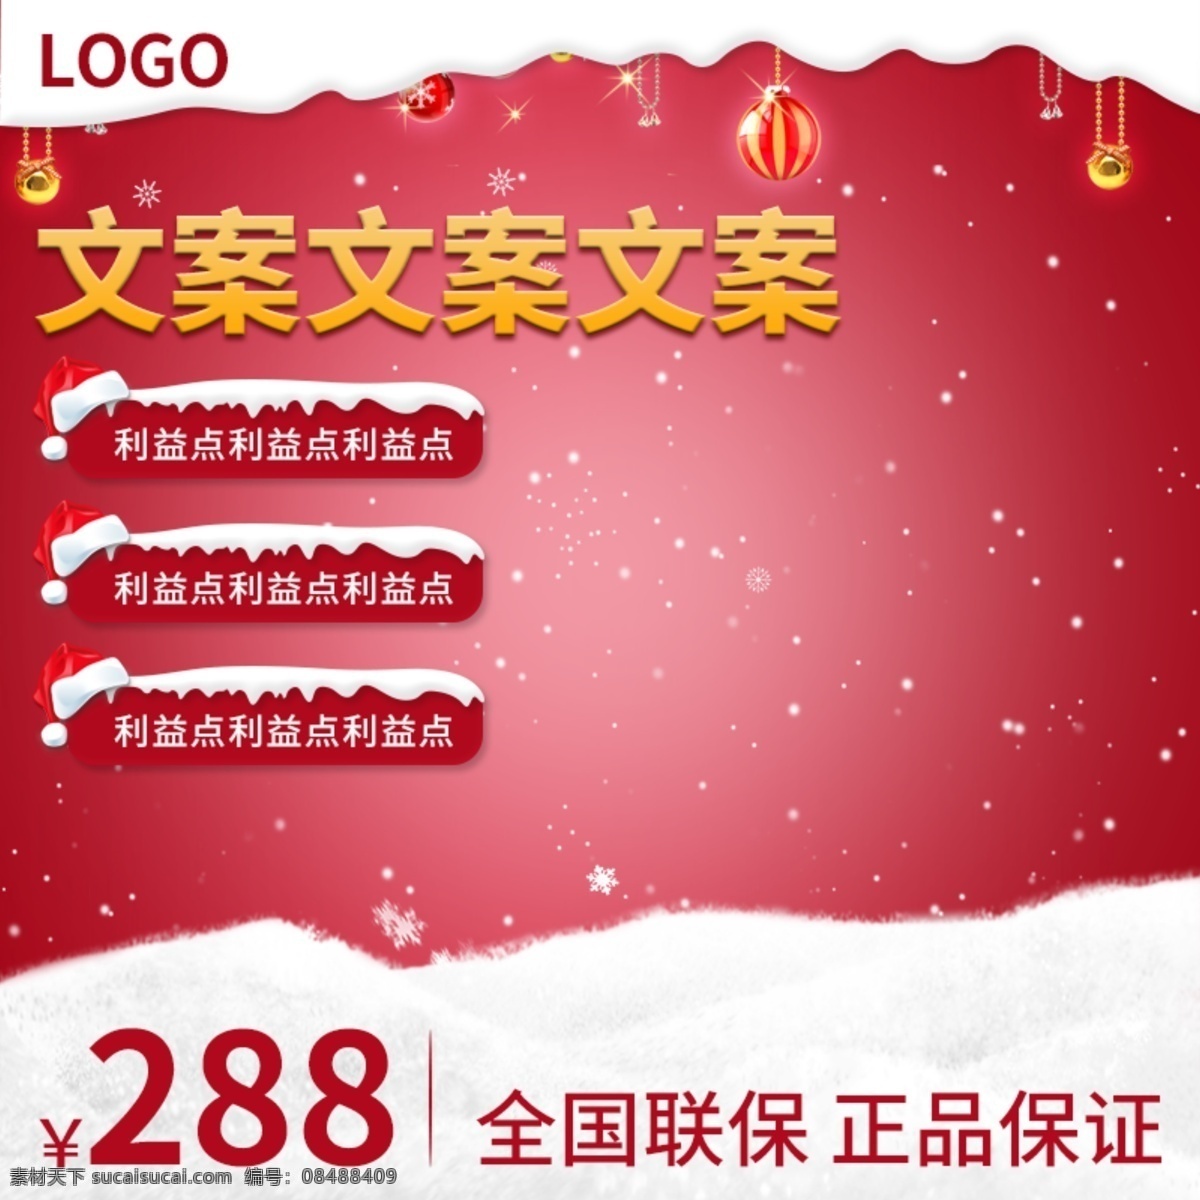 天猫 淘宝 电商 冬季 圣诞 红色 主 图 主图 促销